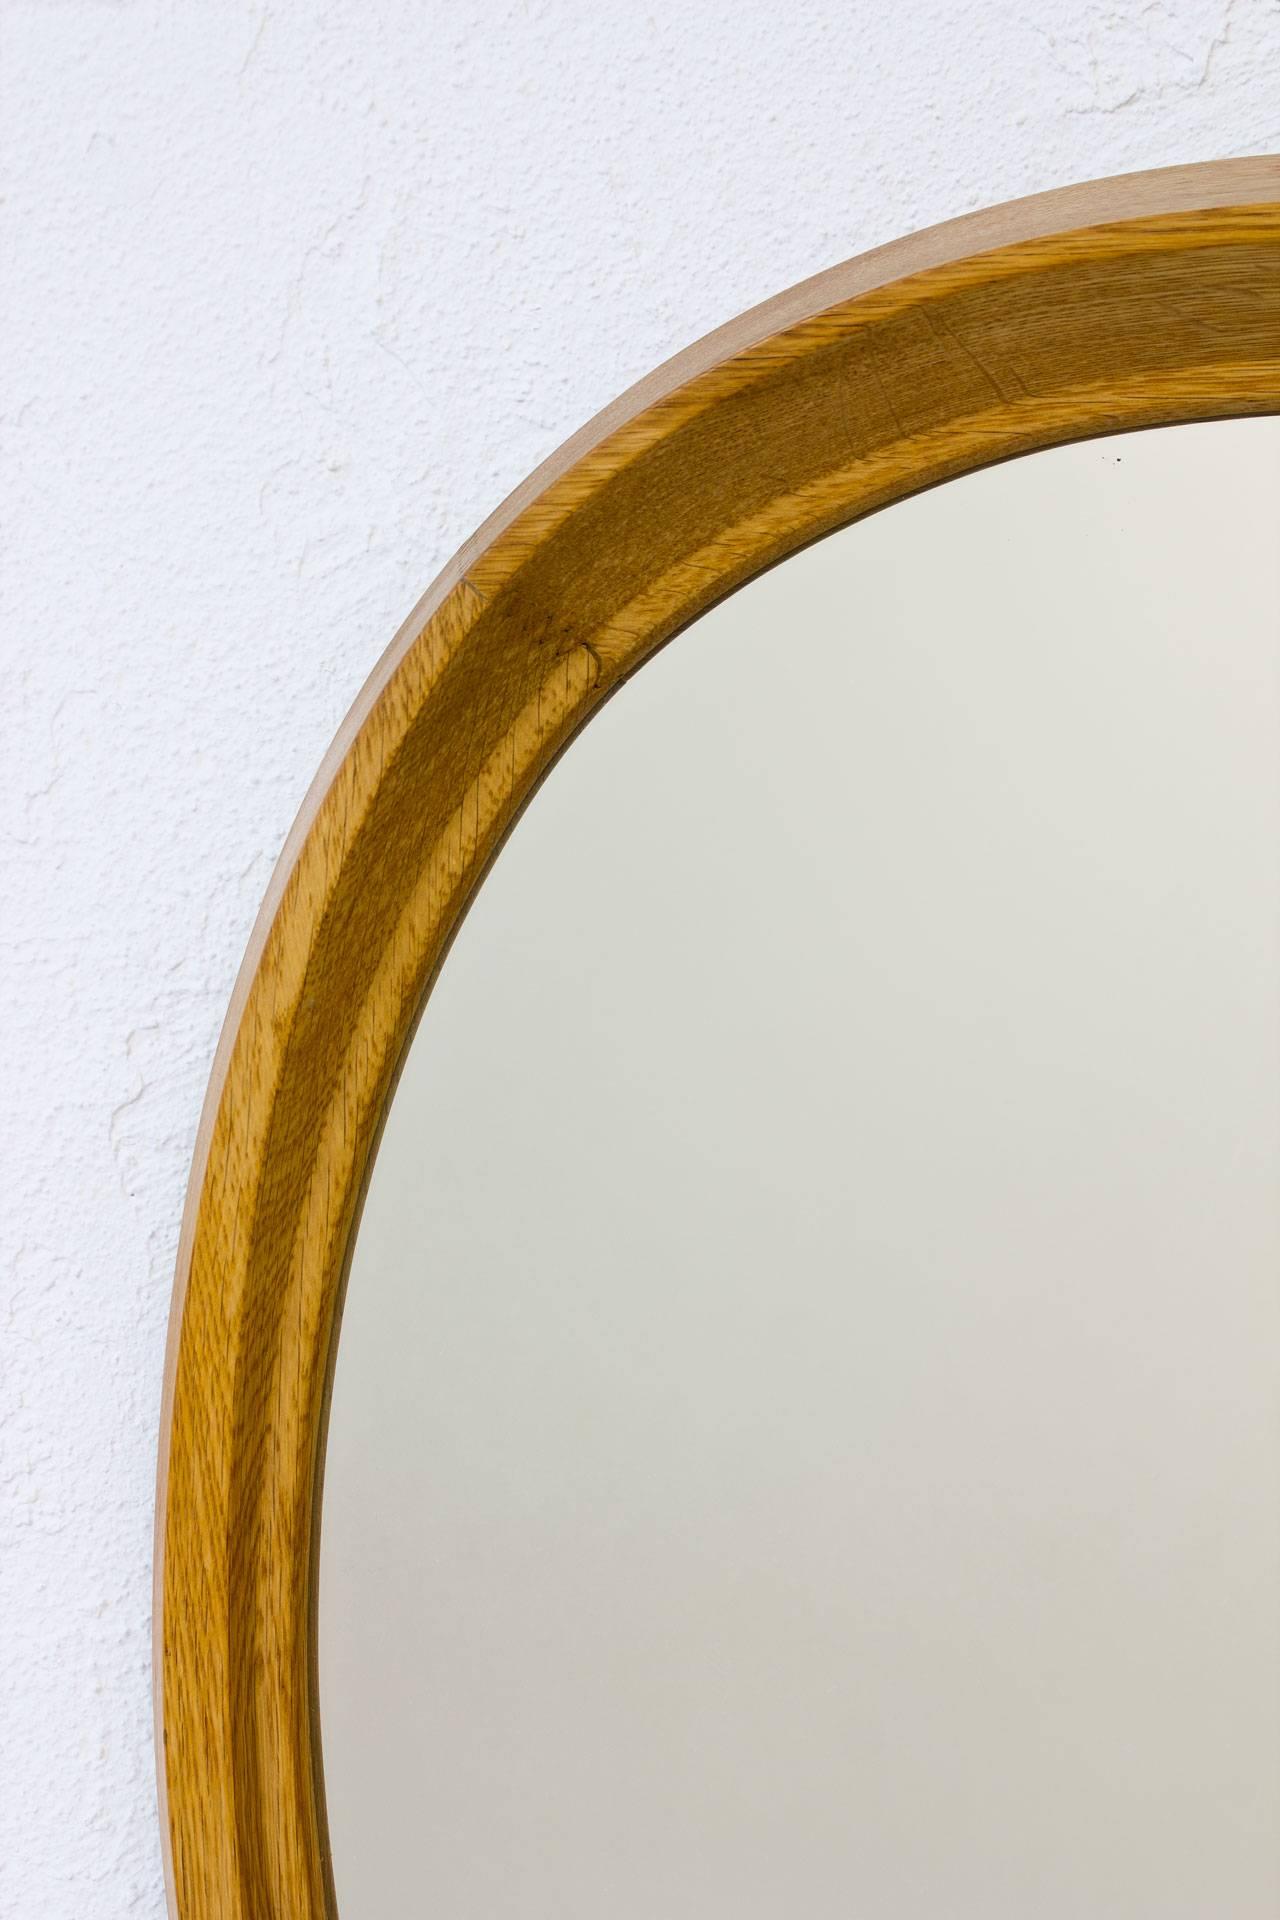 Mid-20th Century Scandinavian Modern Oval Oak Mirror by Fröseke, Sweden